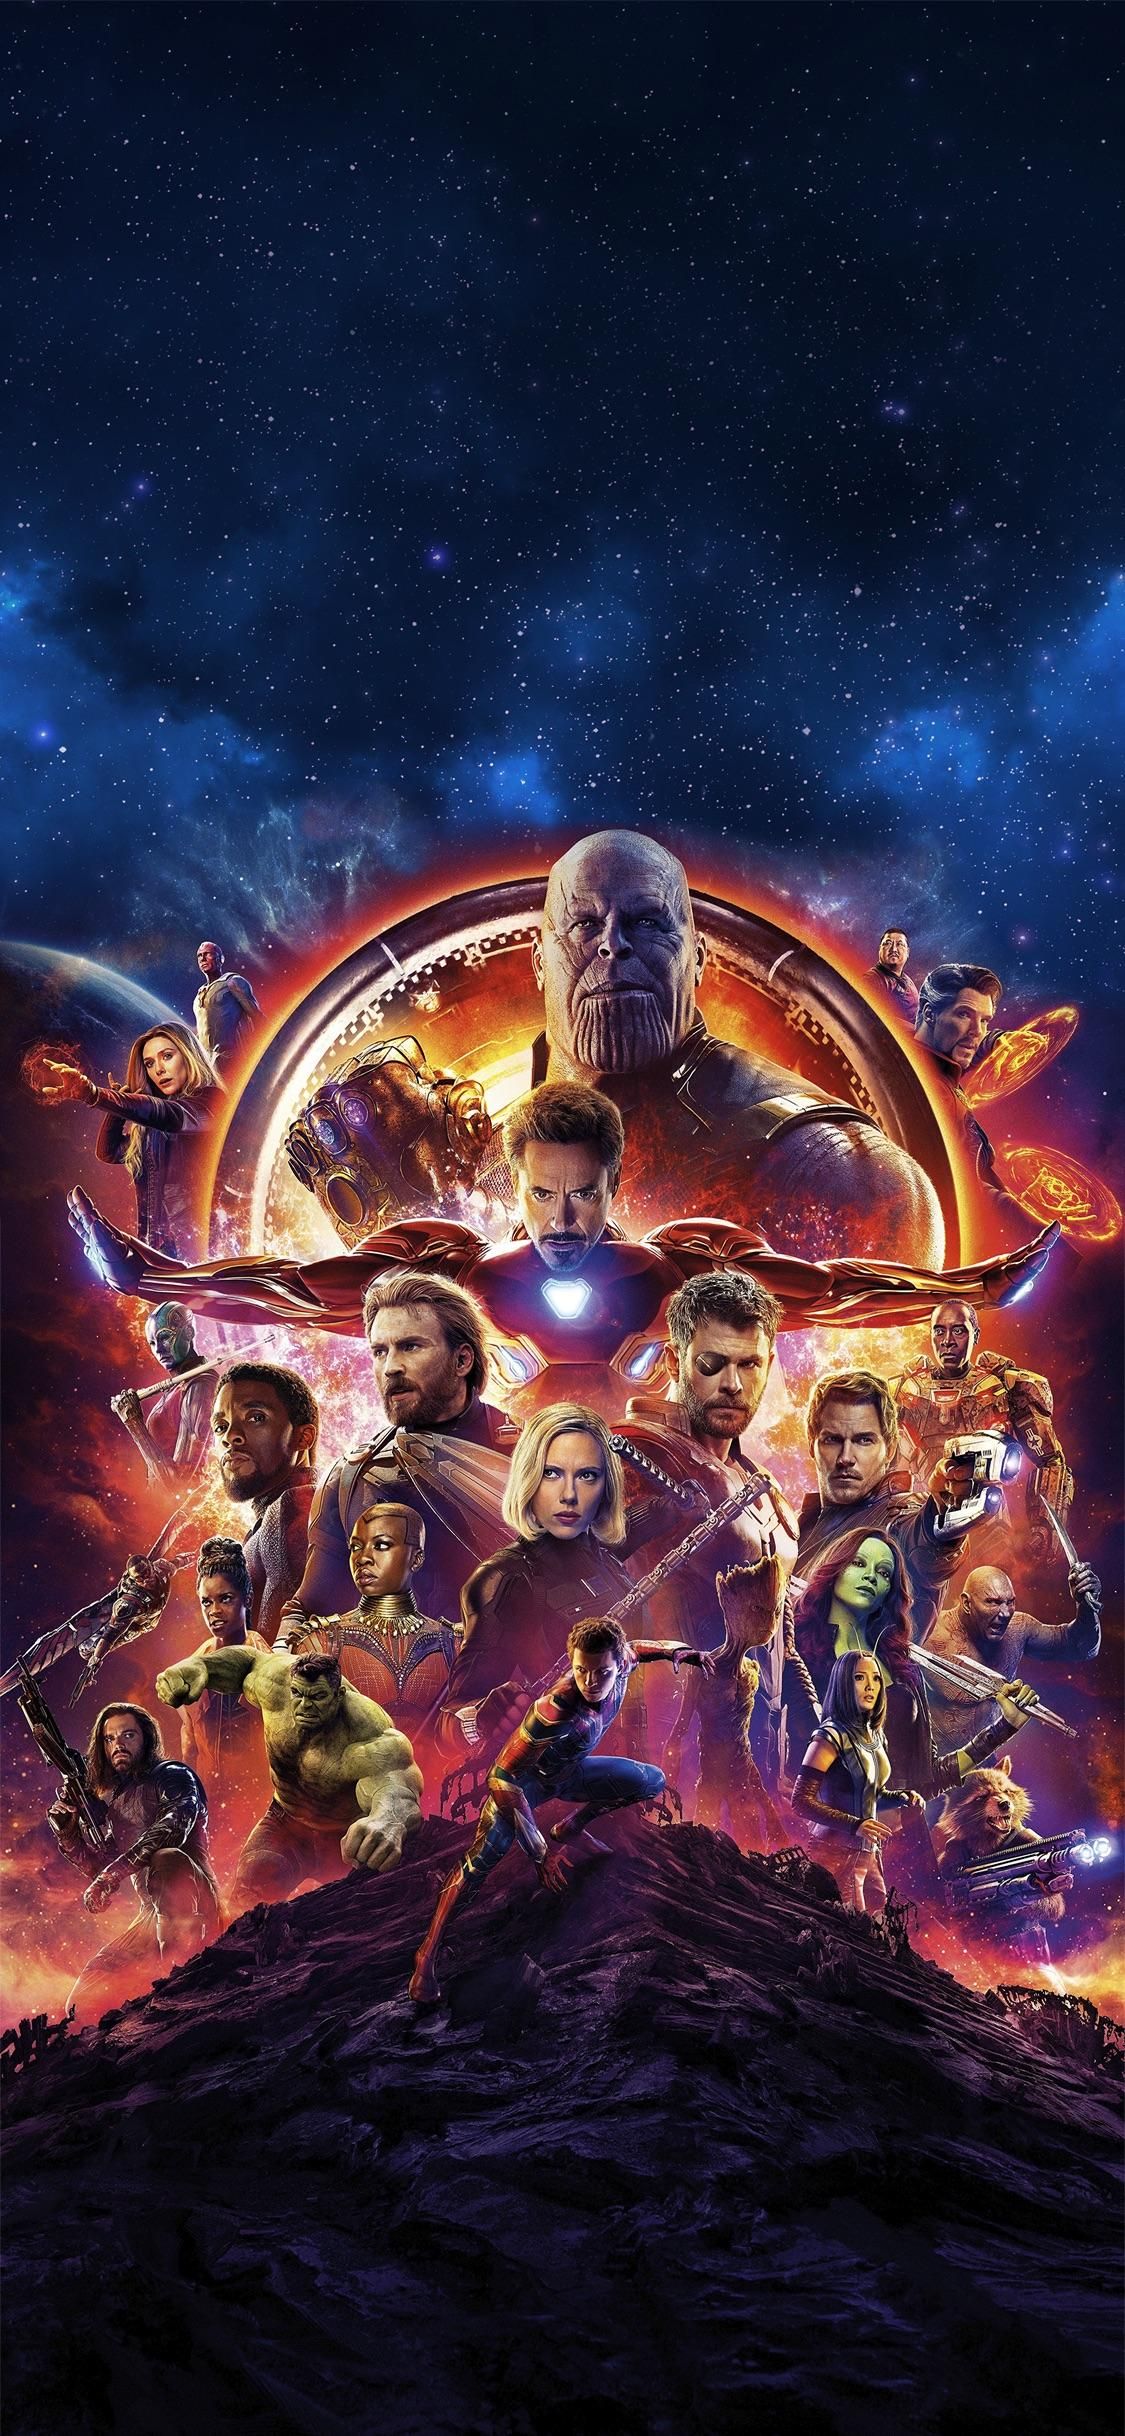 Avengers infinity war movie poster - Avengers